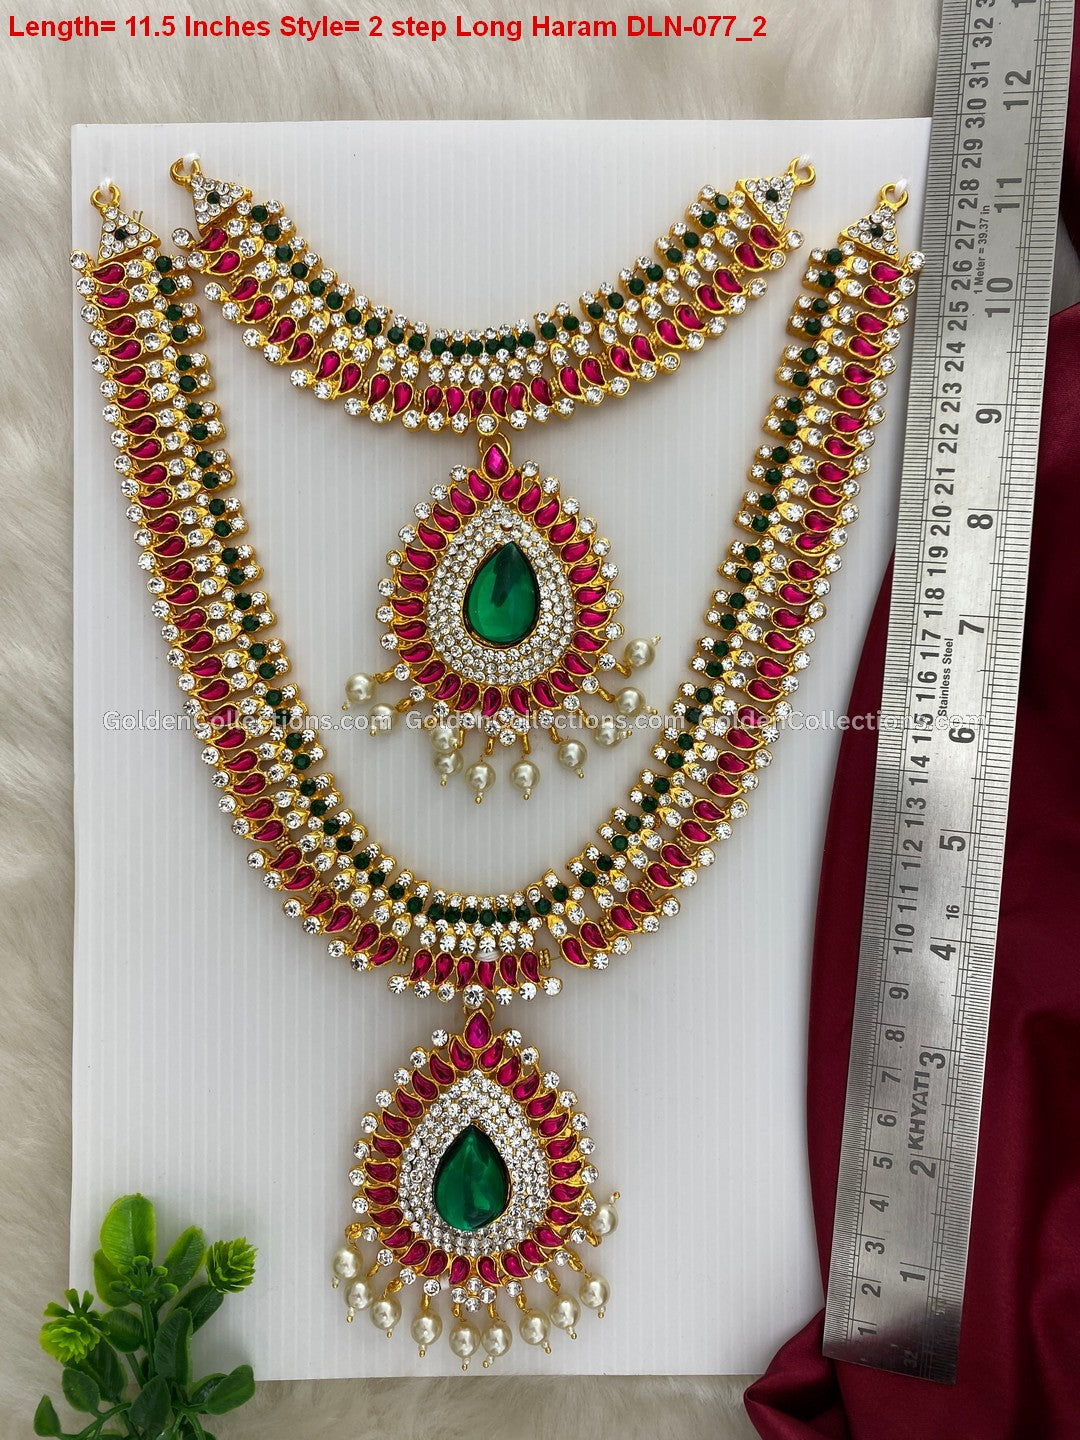 Deity Jewellery Set for Goddess Idol - Shop Now! DLN-077 2